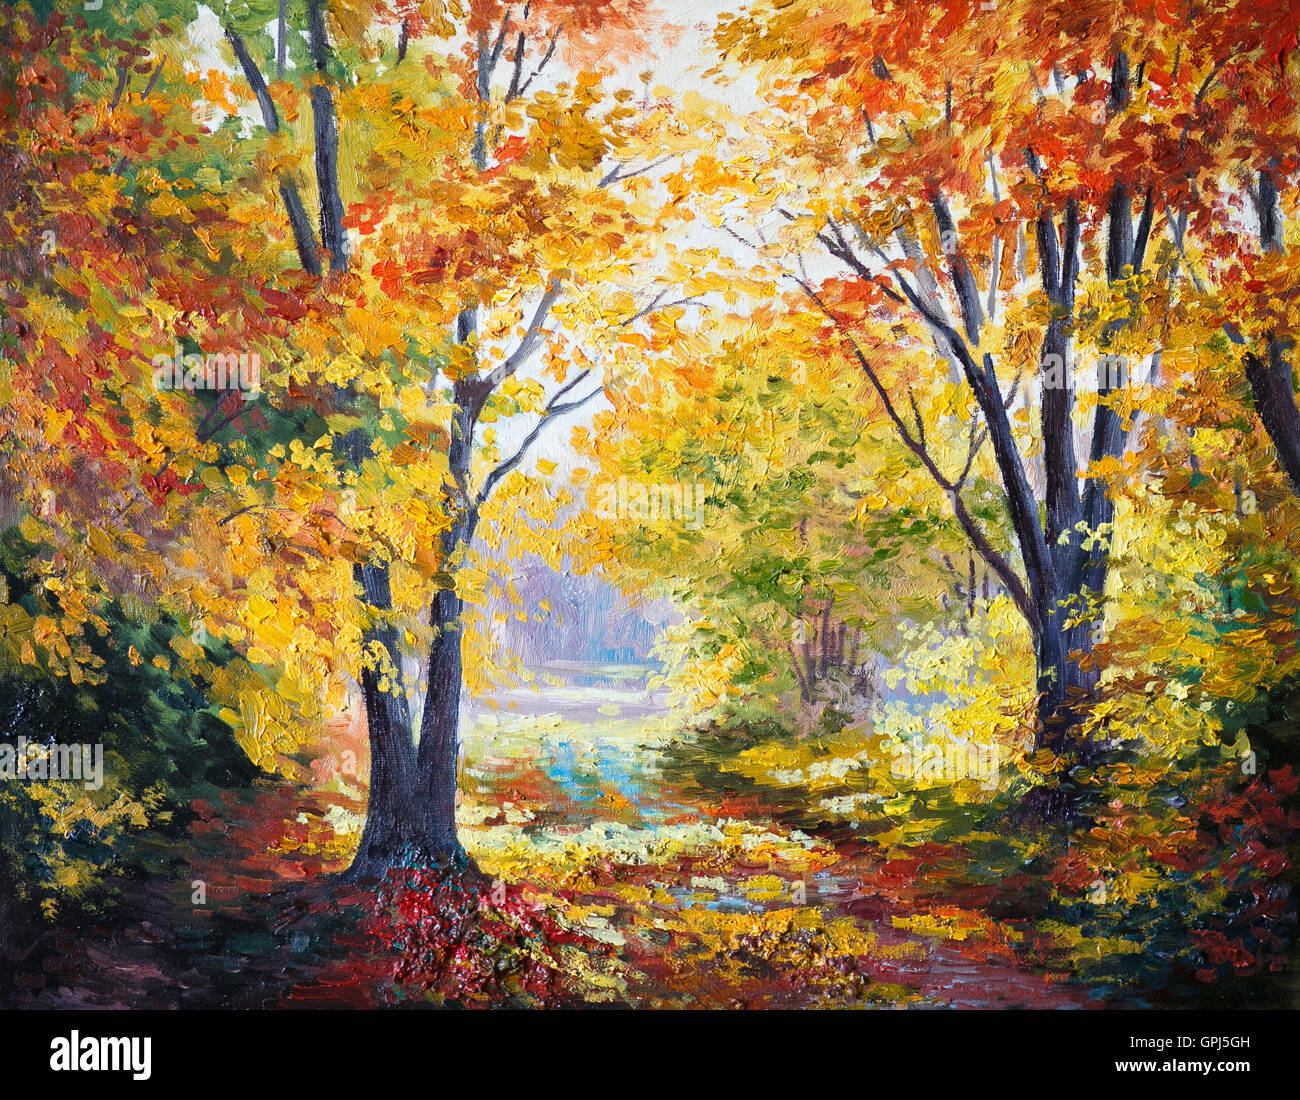 Huile sur toile - forêt d'automne, saison, abstrait, moderne Banque D'Images